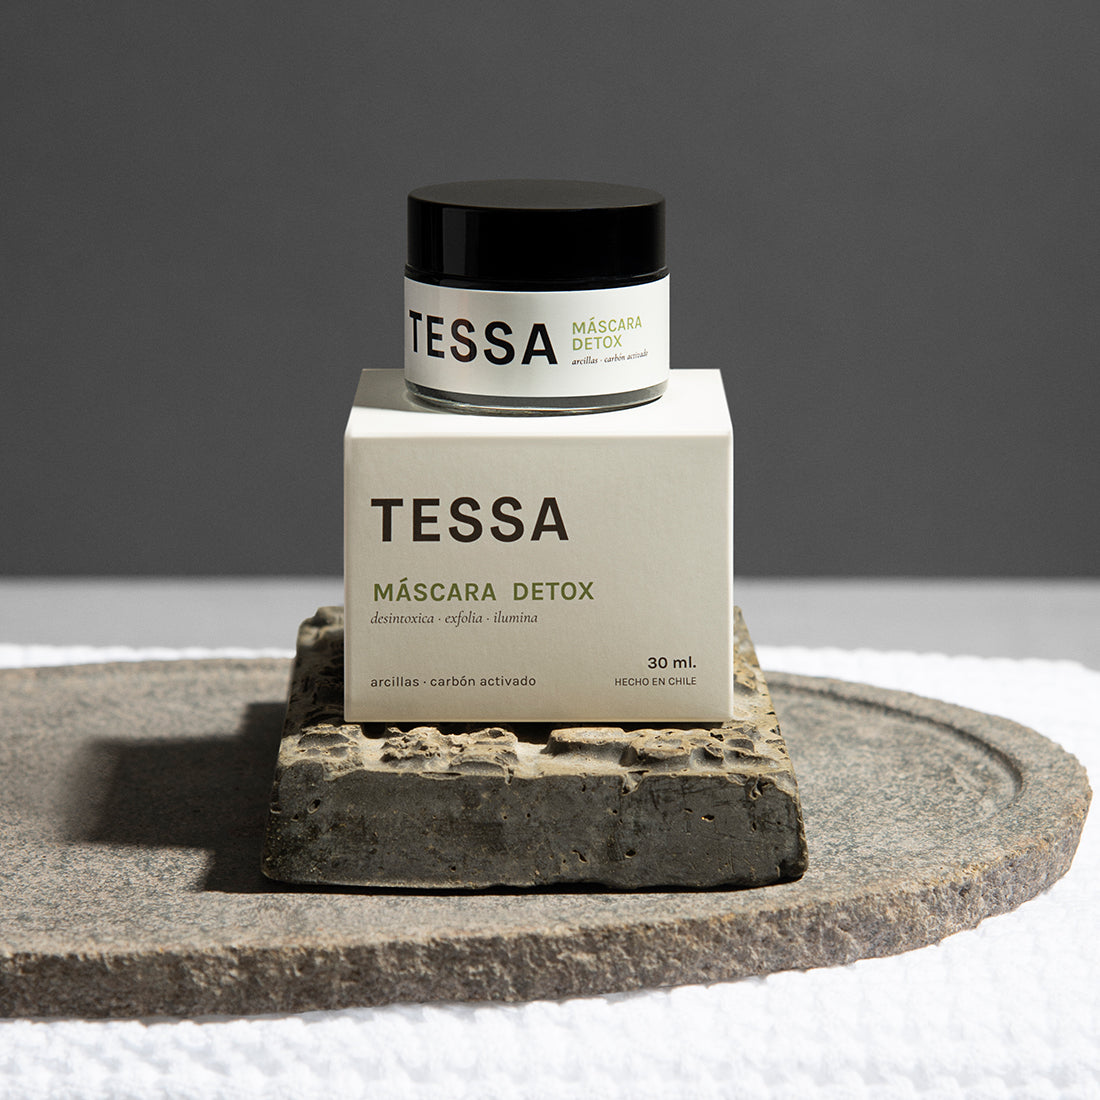 Mascara detox para piel con impurezas, marca TESSA